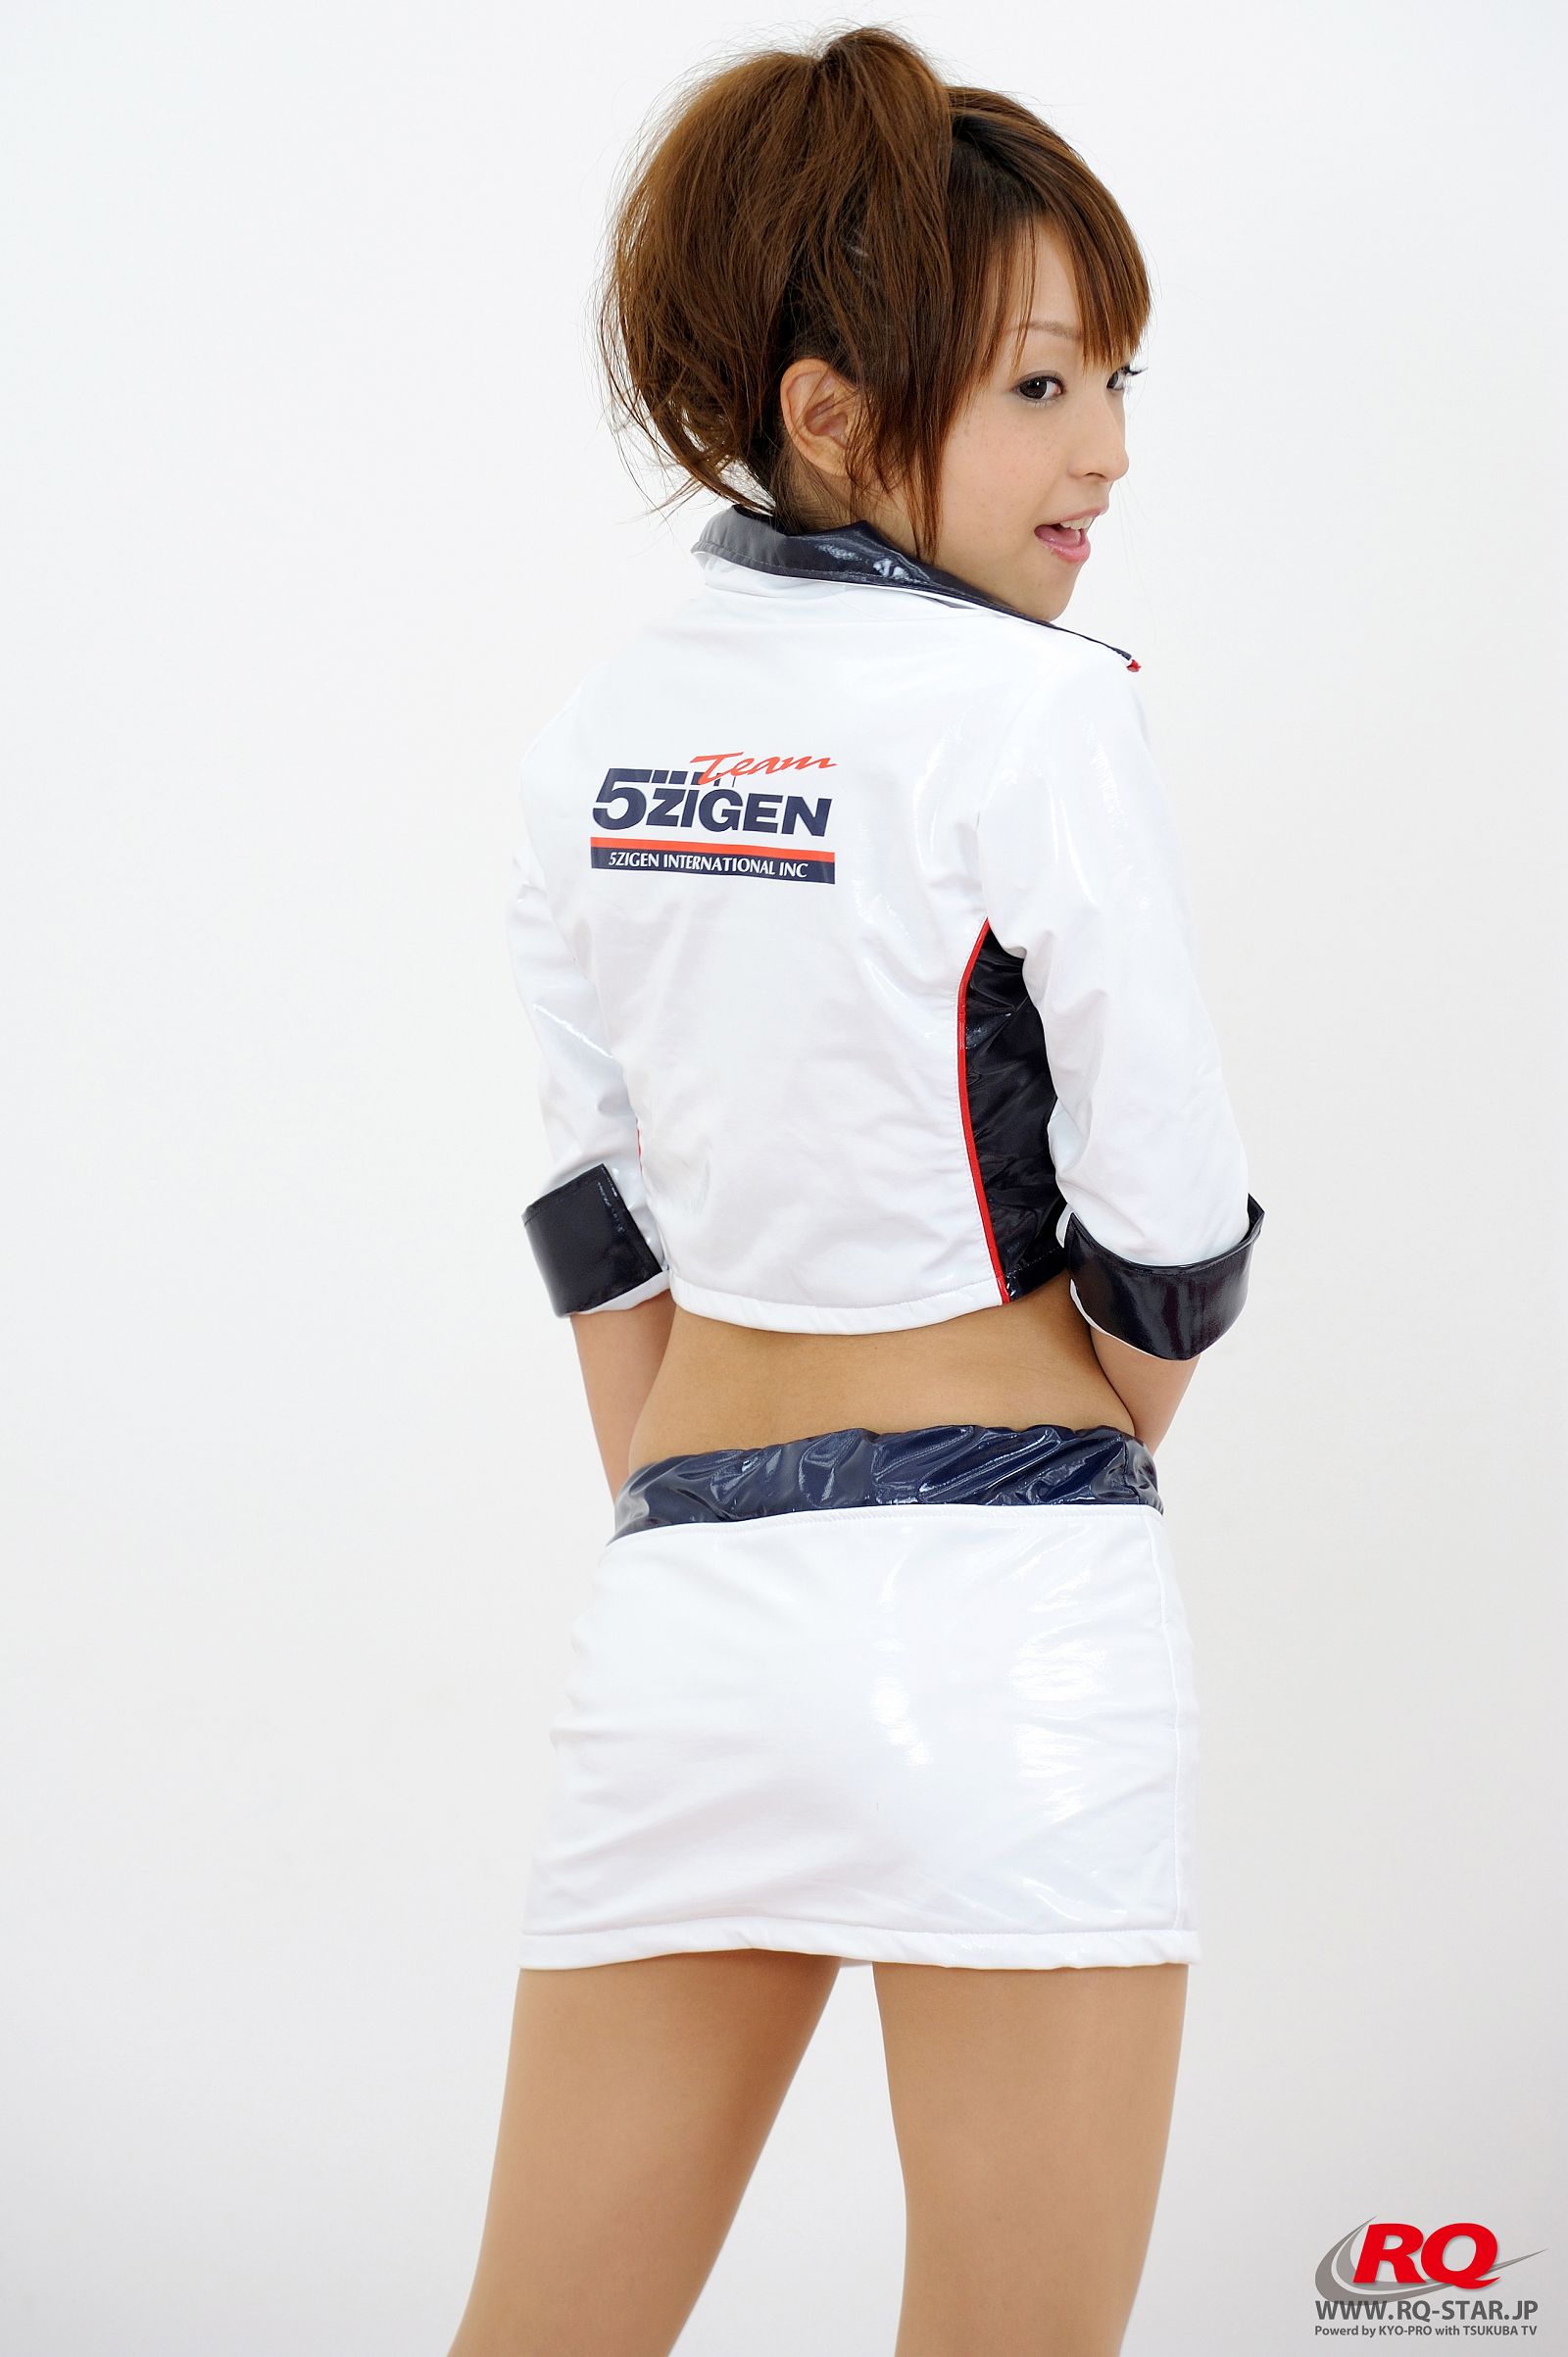 [RQ-STAR美女] NO.0085 Mio Aoki 青木未央 Race Queen - 2008 5Zigen1